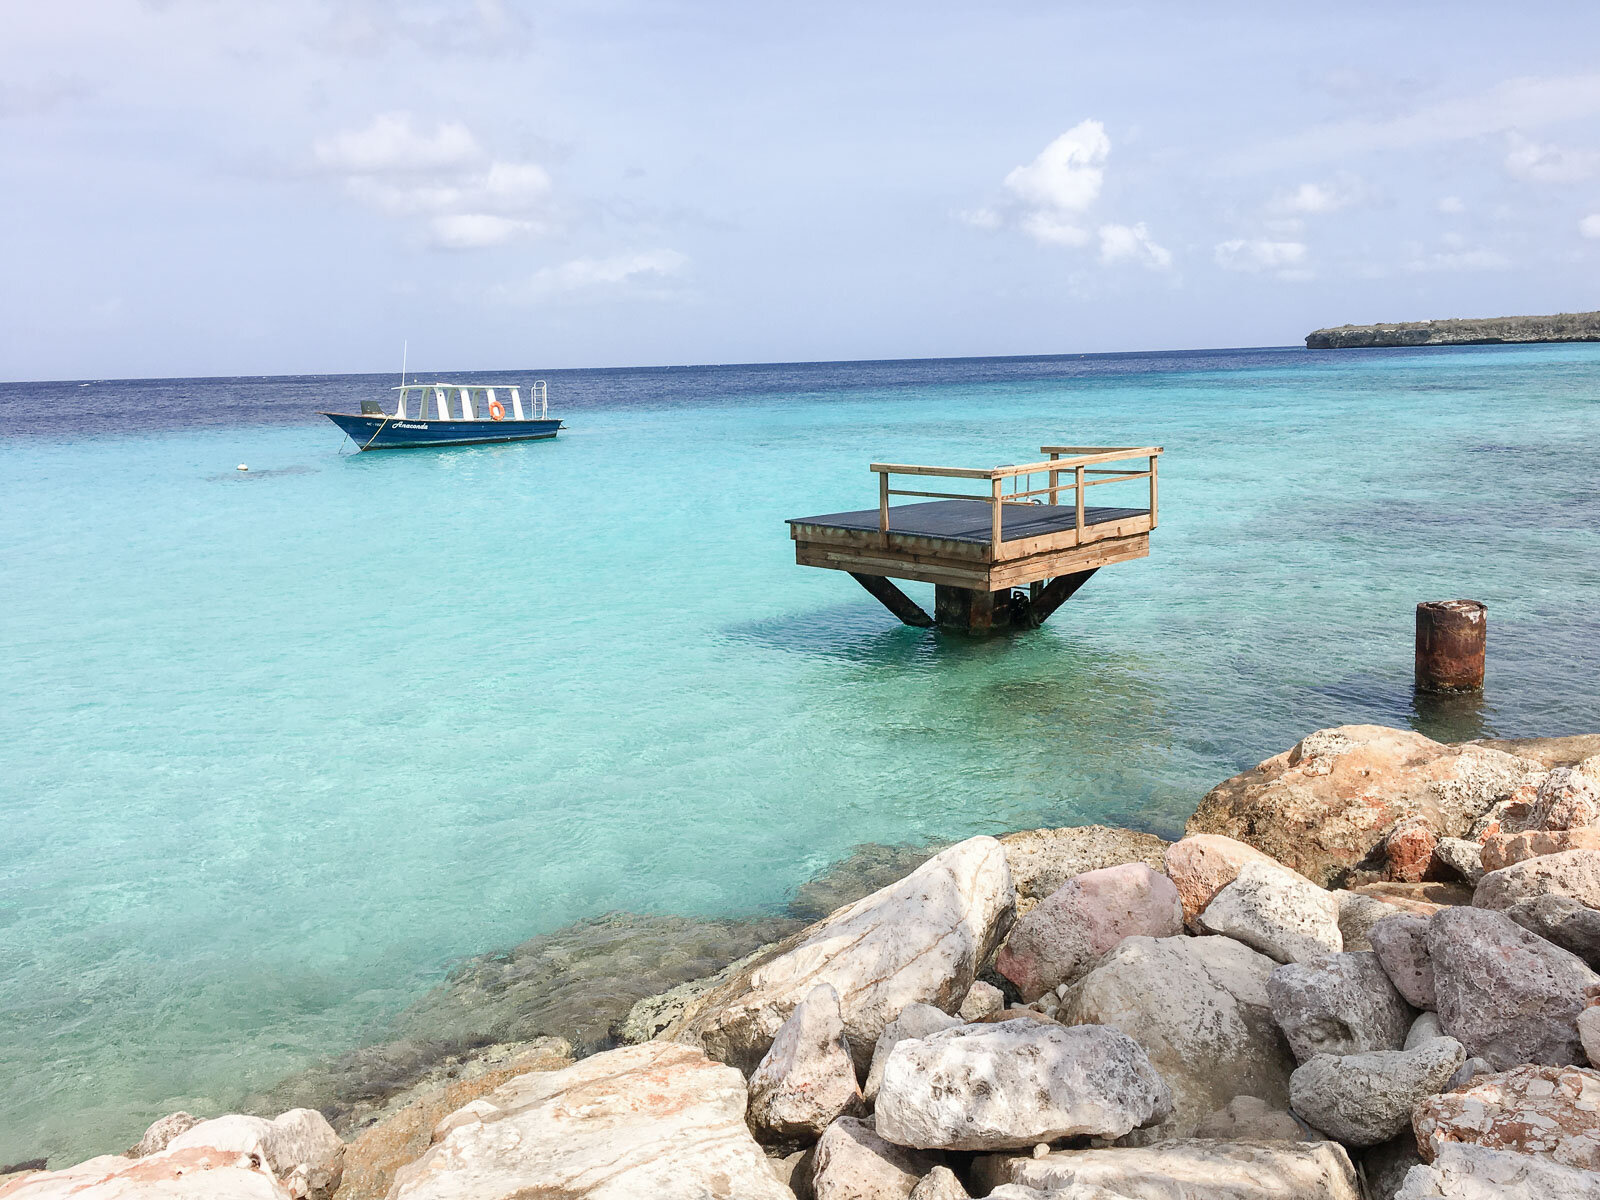 Das Wasser am Karakter Curaçao ist einmalig von einmalig türkiser Farbe.